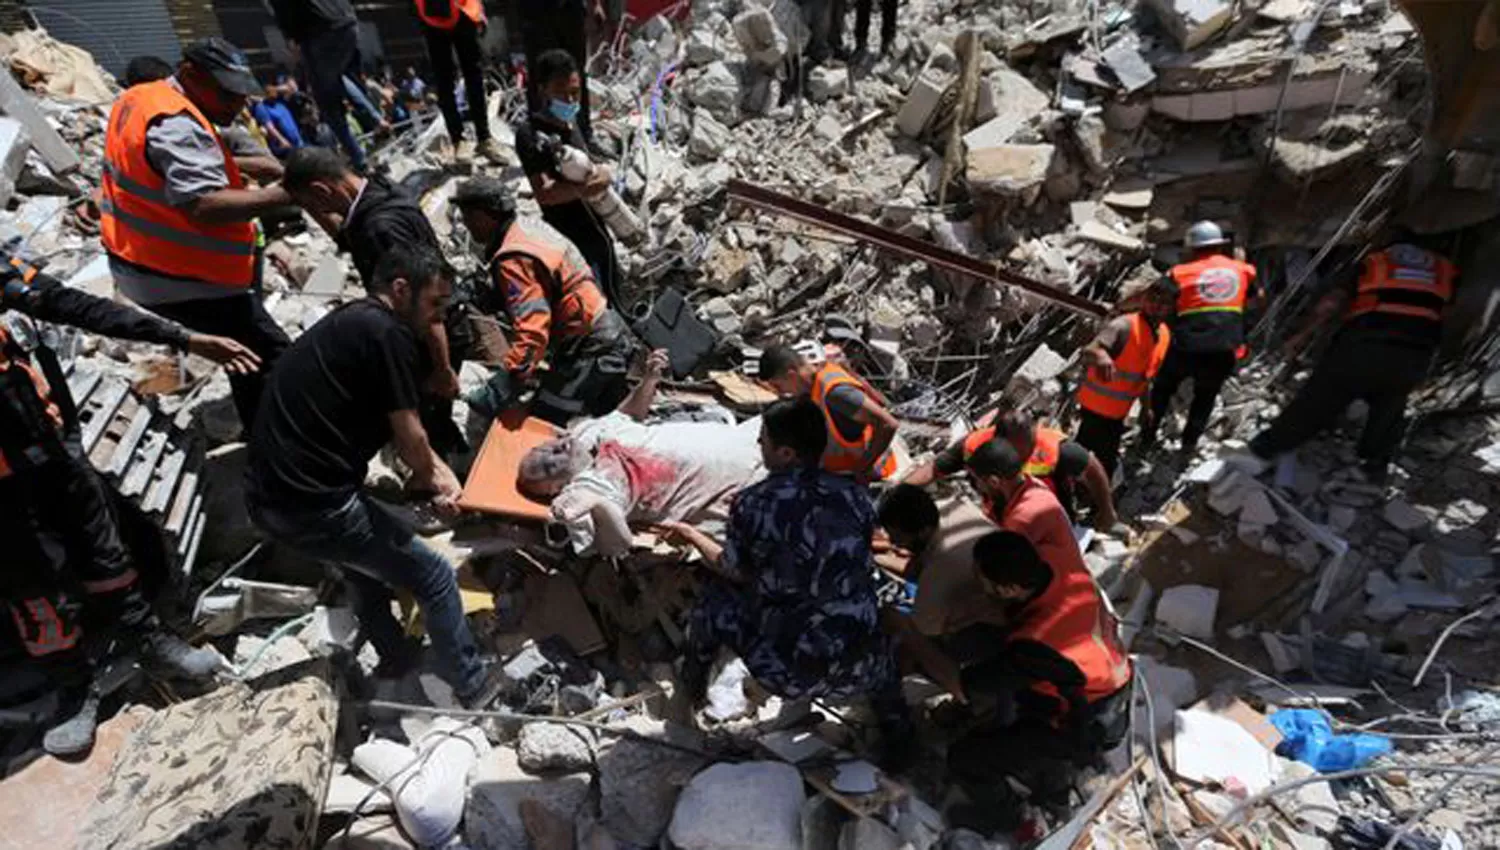 BAÑO DE SANGRE. Rescatistas auxilian a un hombre herido durante los bombardeos sobre Franja de Gaza.